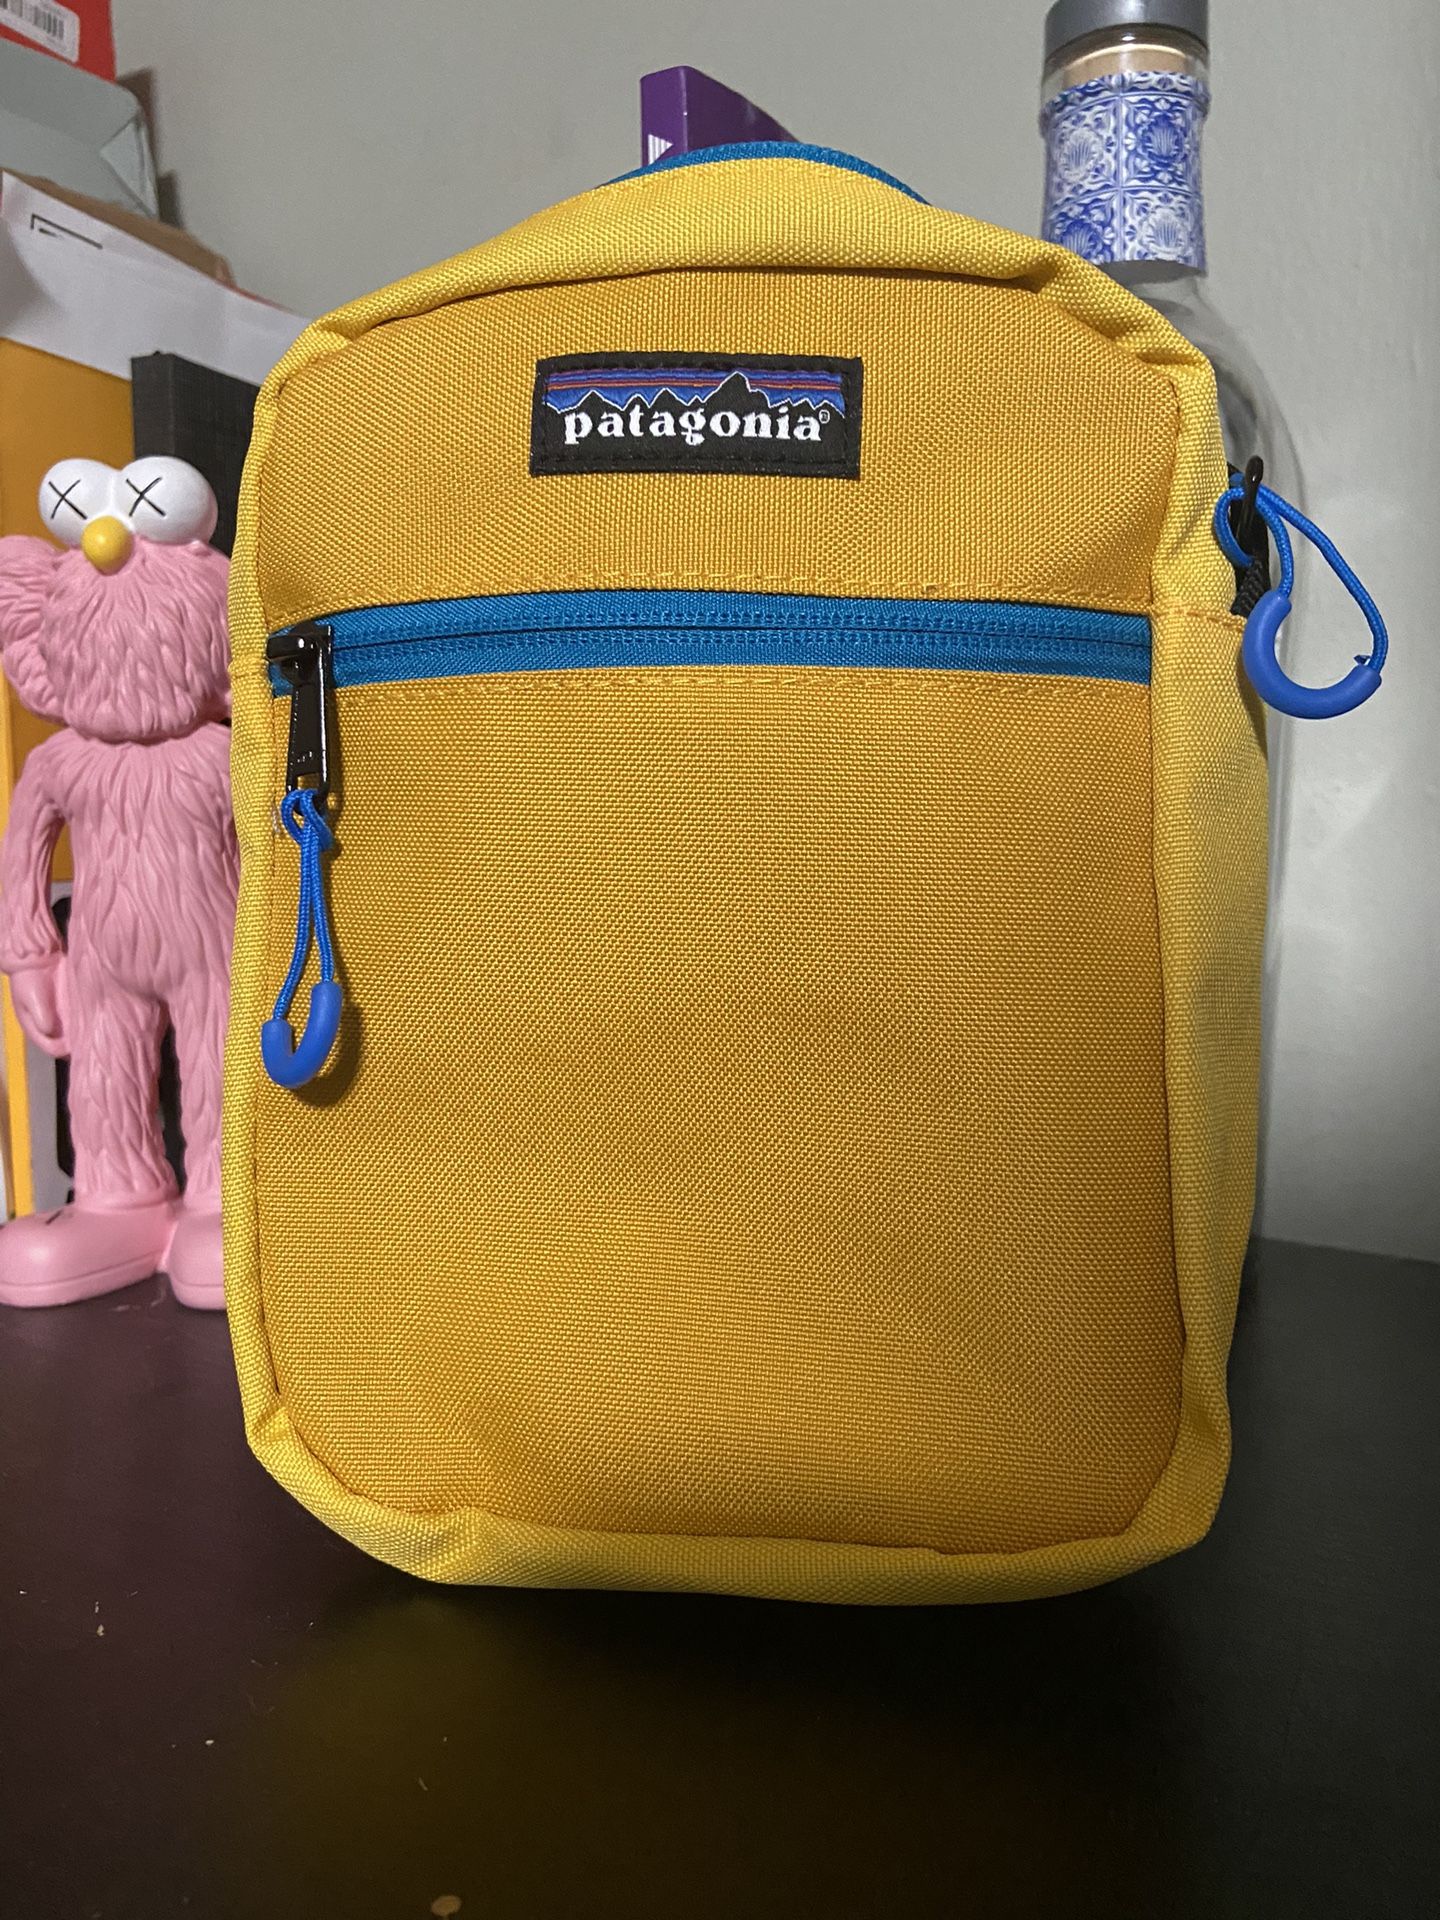 Patagonia Zipper Bag